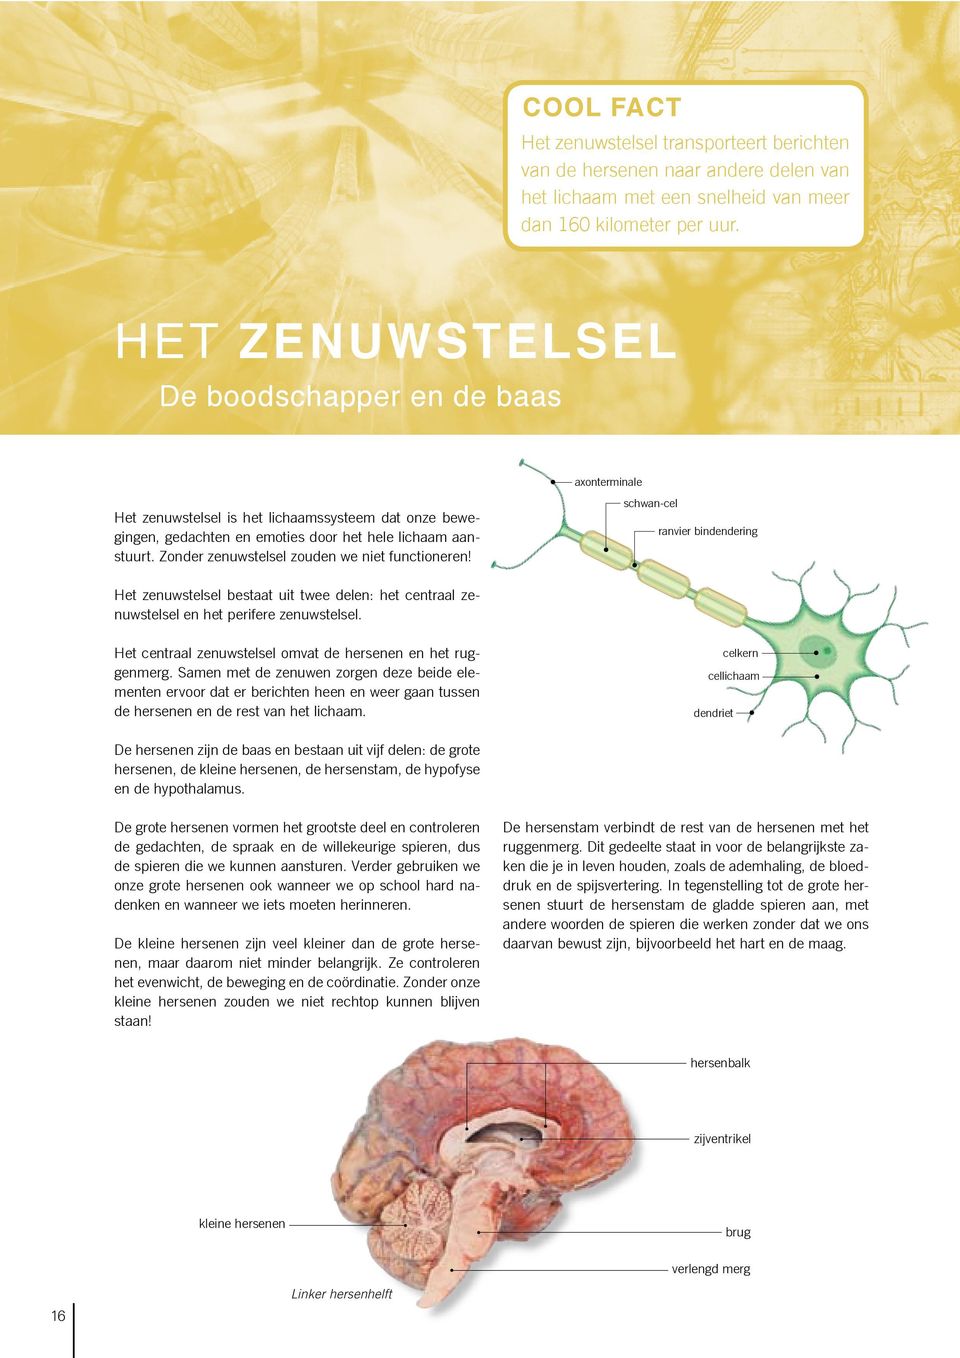 Zonder zenuwstelsel zouden we niet functioneren! axonterminale schwan-cel ranvier bindendering Het zenuwstelsel bestaat uit twee delen: het centraal zenuwstelsel en het perifere zenuwstelsel.